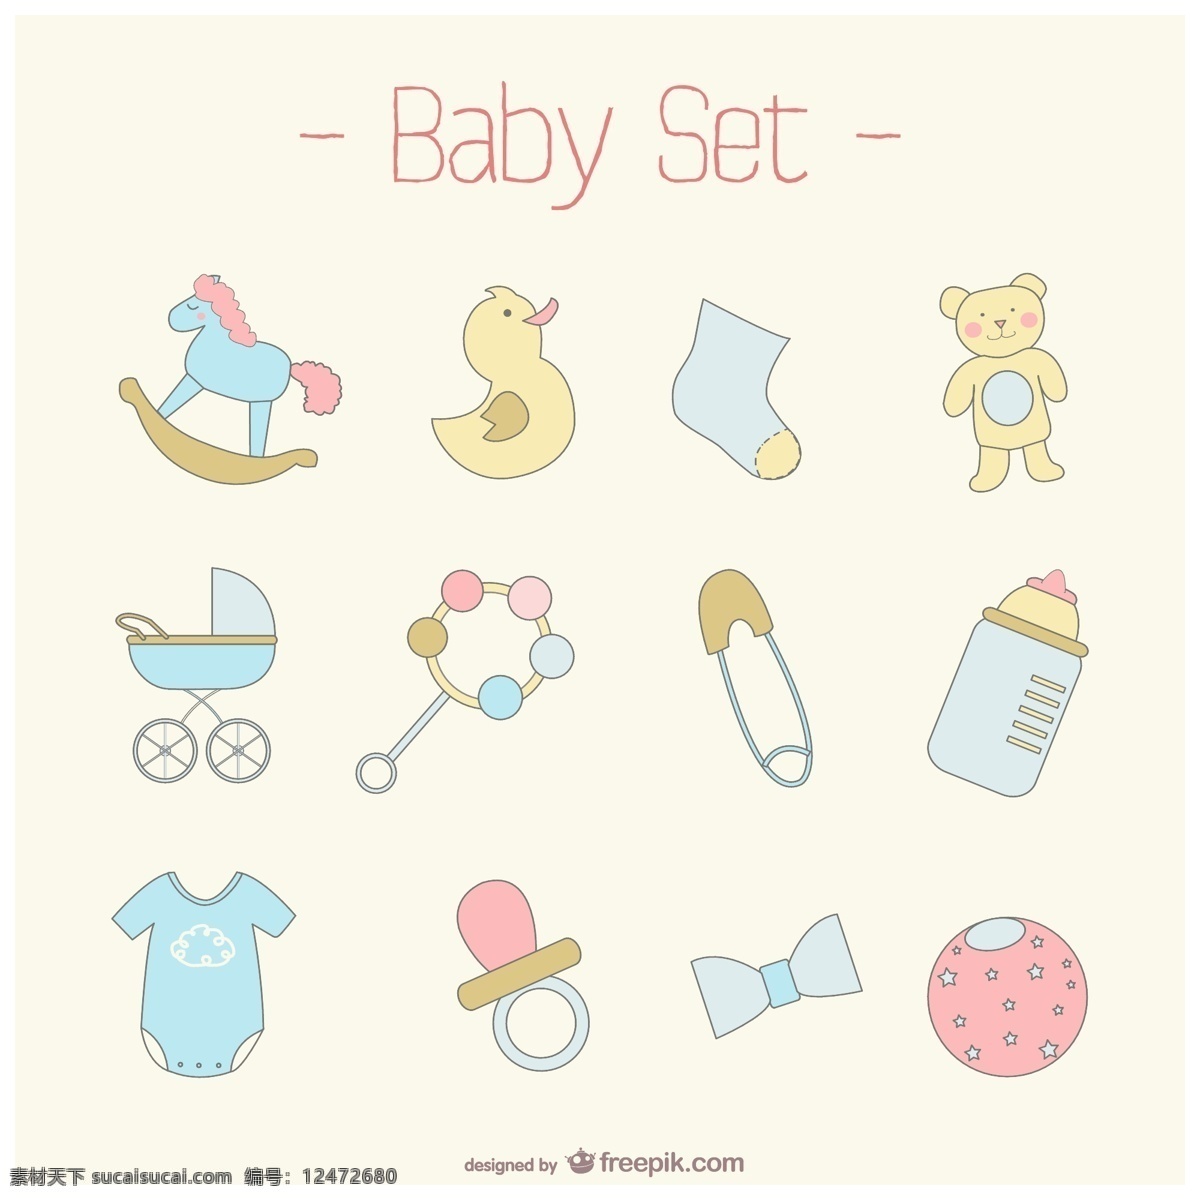 可爱 宝贝 设置 婴儿 图标 模板 动物 艺术 马 图形 弓 熊 布局 图形设计 领带 绘图 有趣 鸭子 玩具 插图 玩具熊 白色